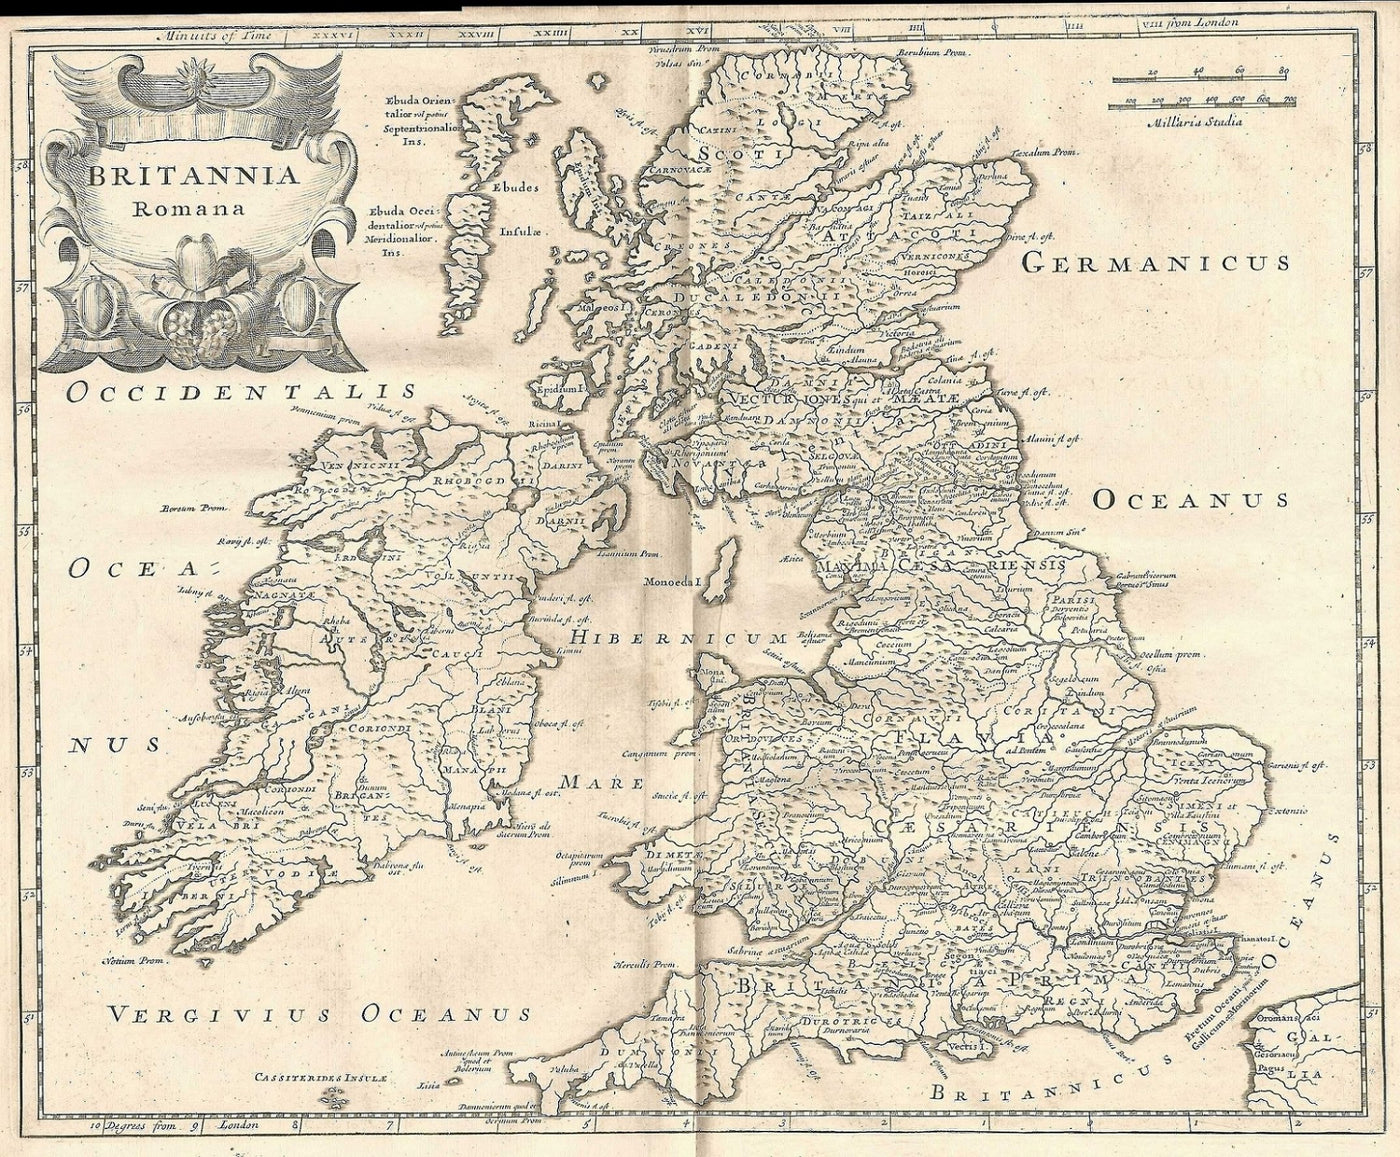 Britannia Romana Roman Britain antique map 1753